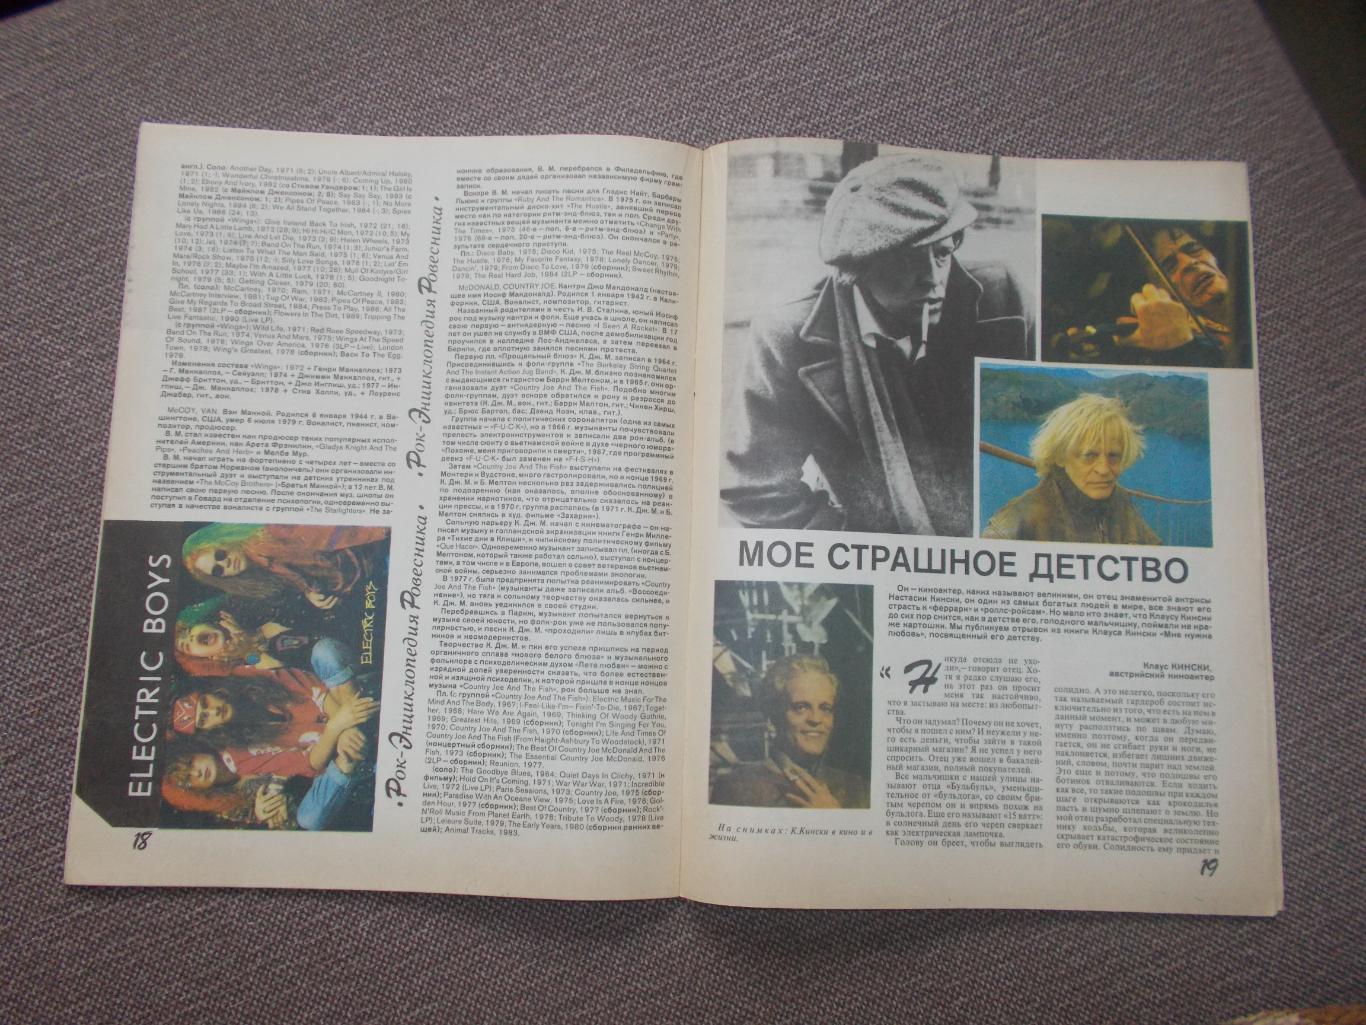 Журнал СССР :Ровесник№ 8 (август) 1991 г. (Молодежный музыкальный журнал) 5